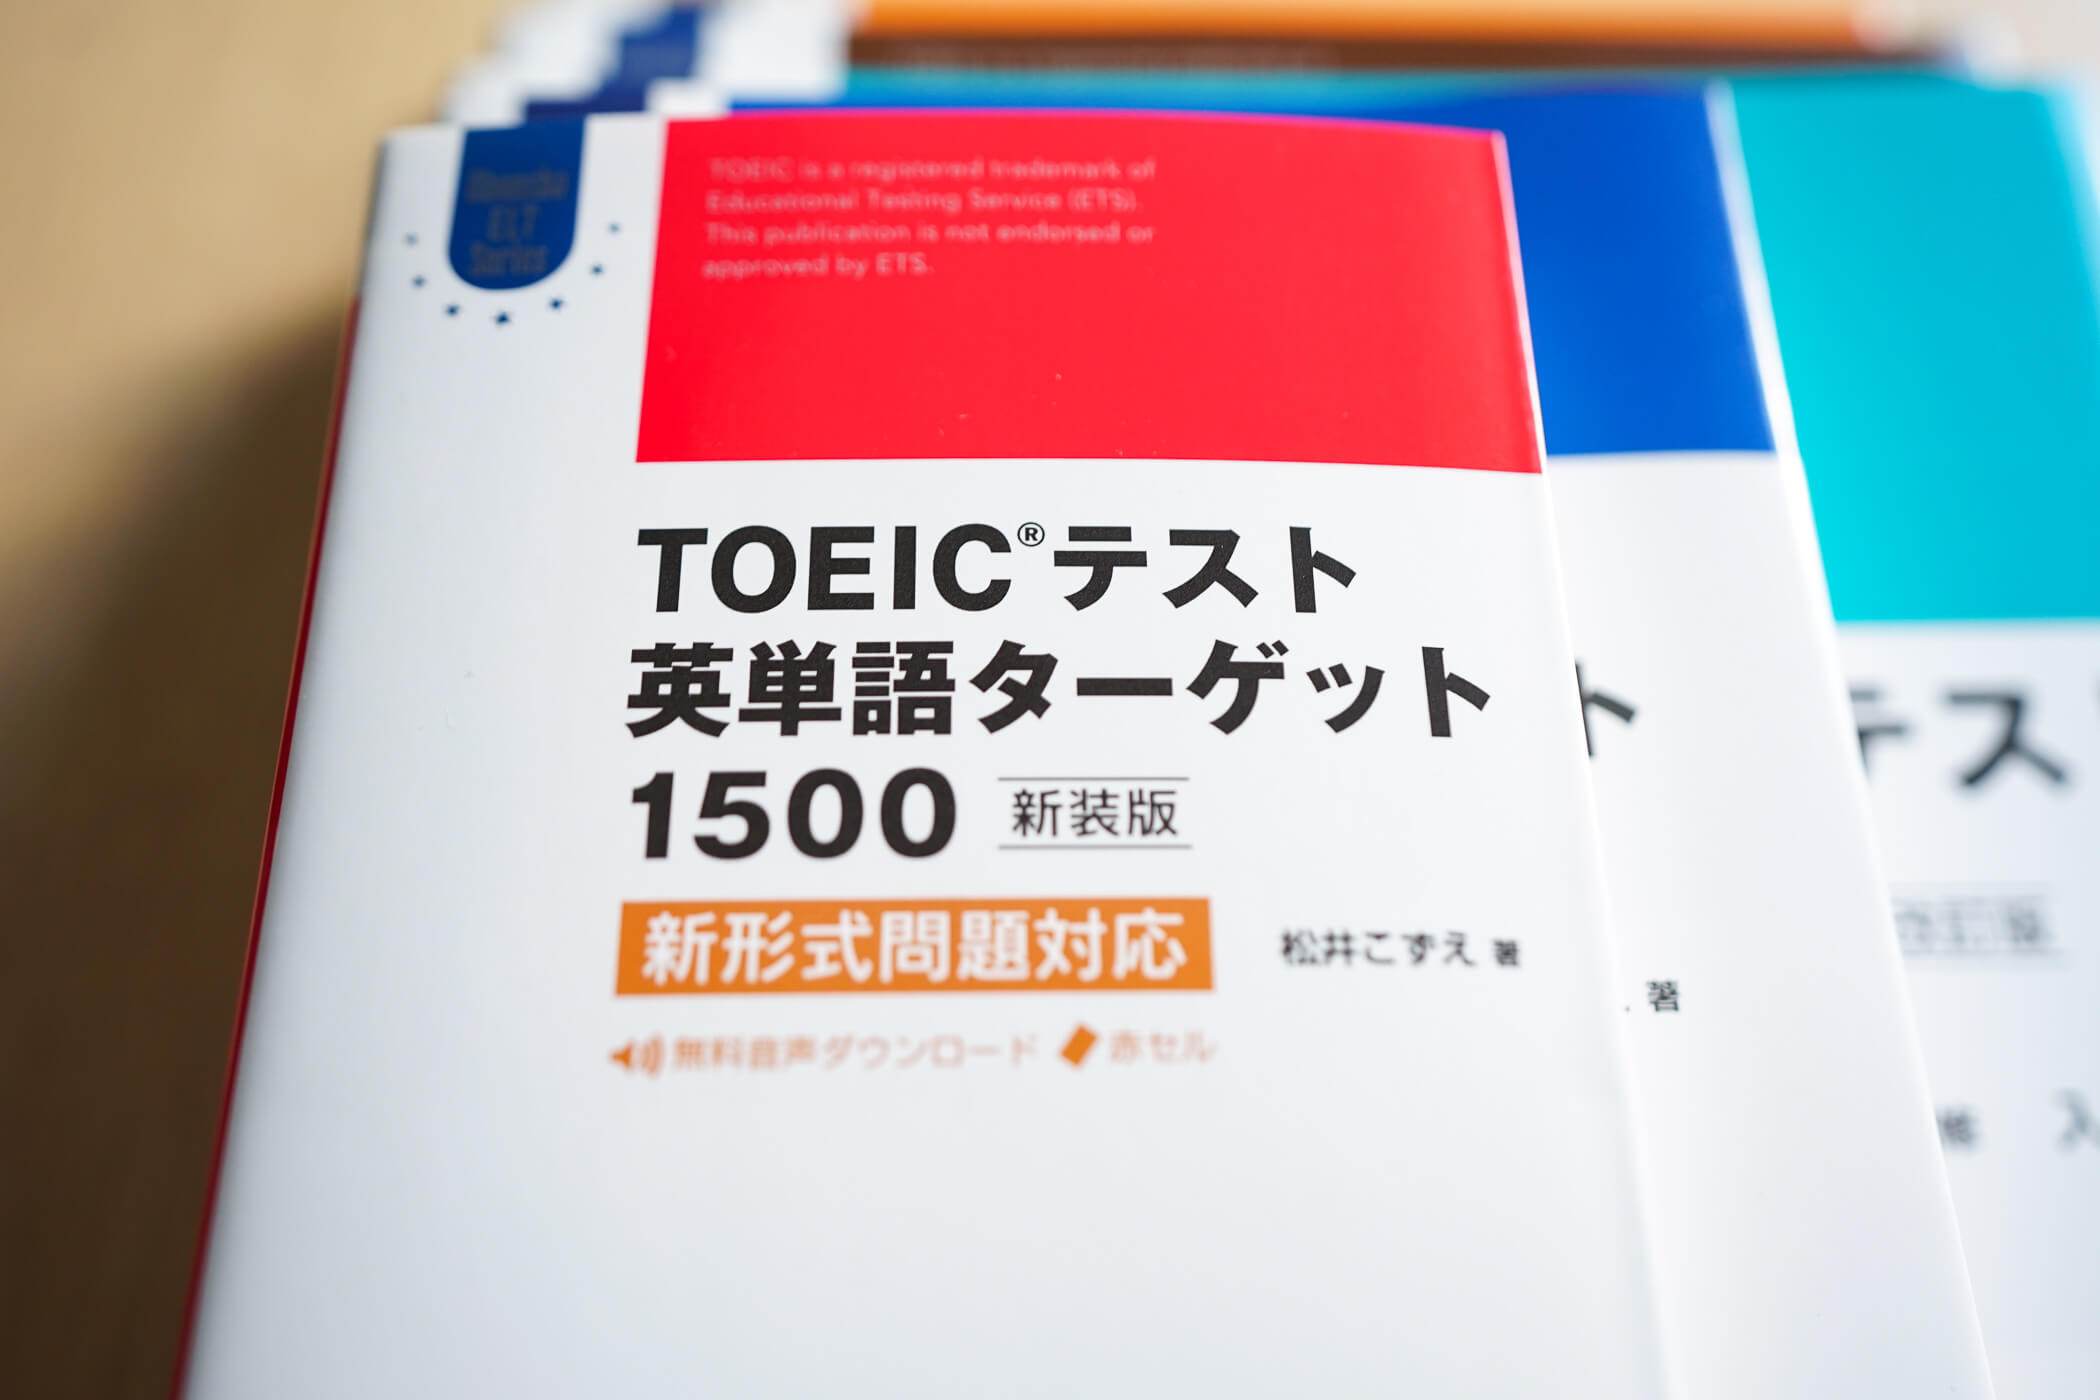 Toeic L Rテストとは 概要と勉強法 試験対策 旺文社 英語の友